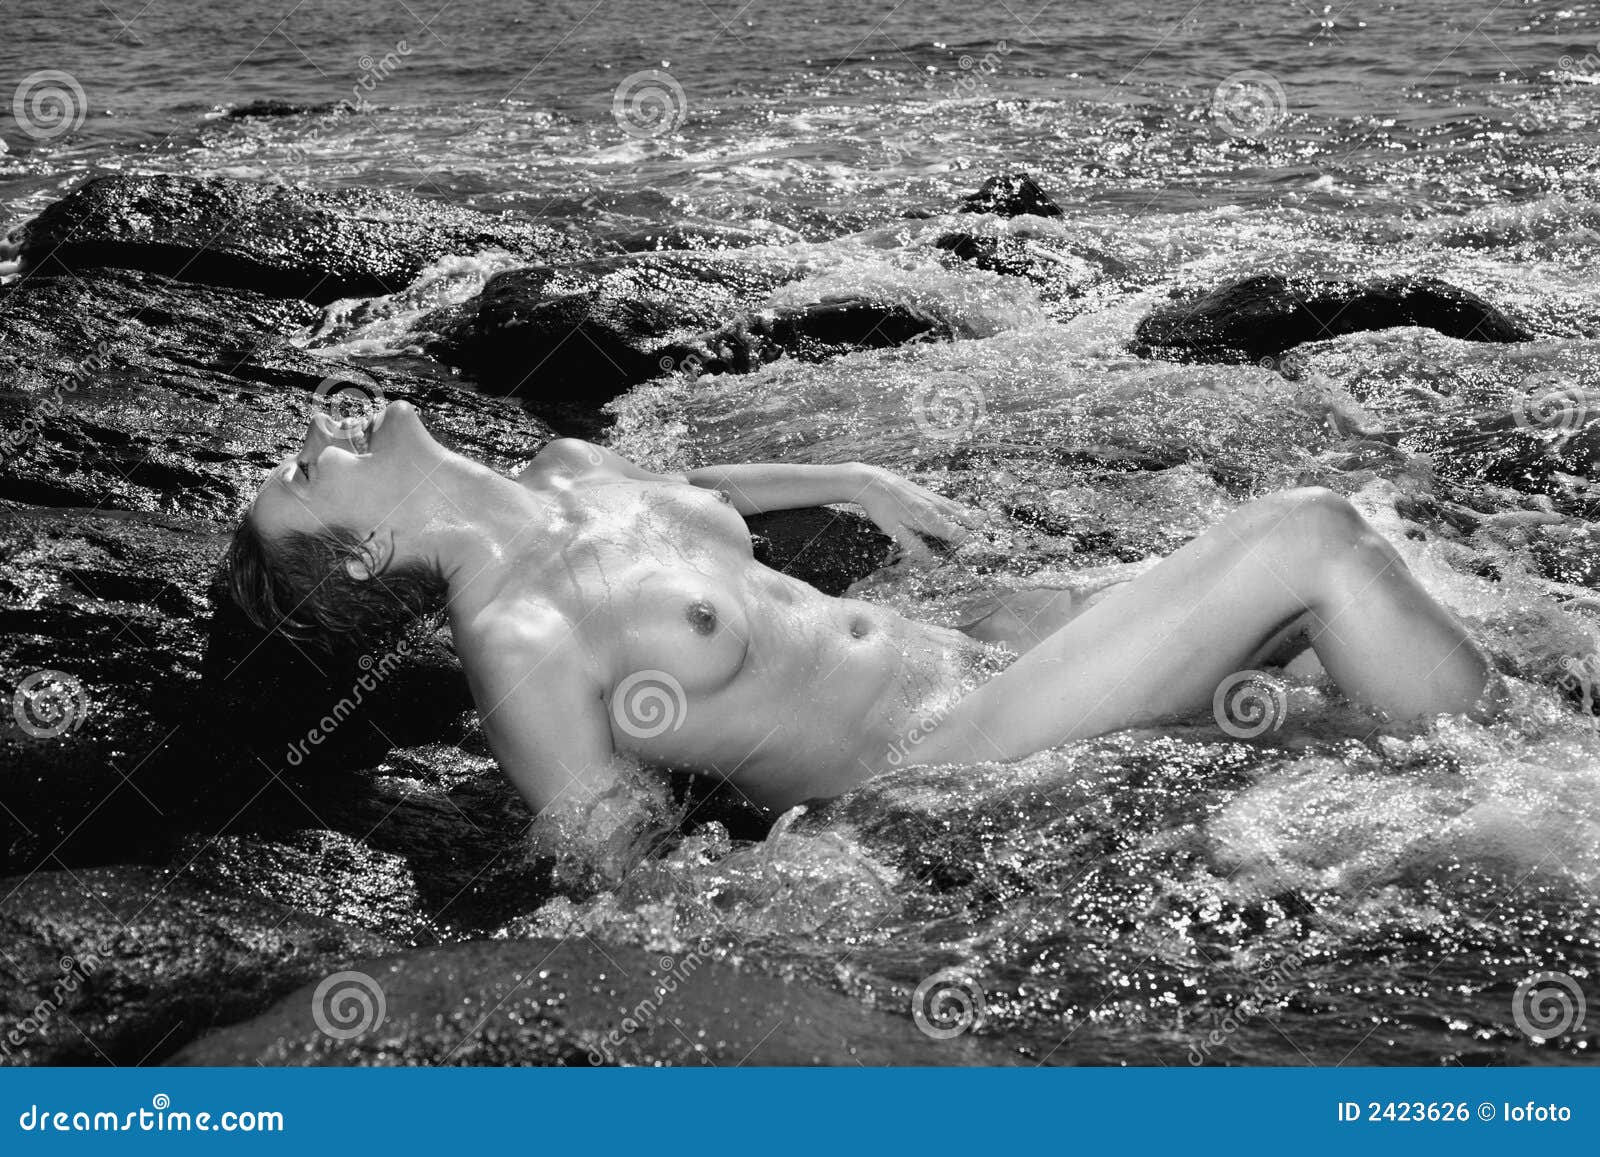 картинки моя женщина на голом пляжу фото 106